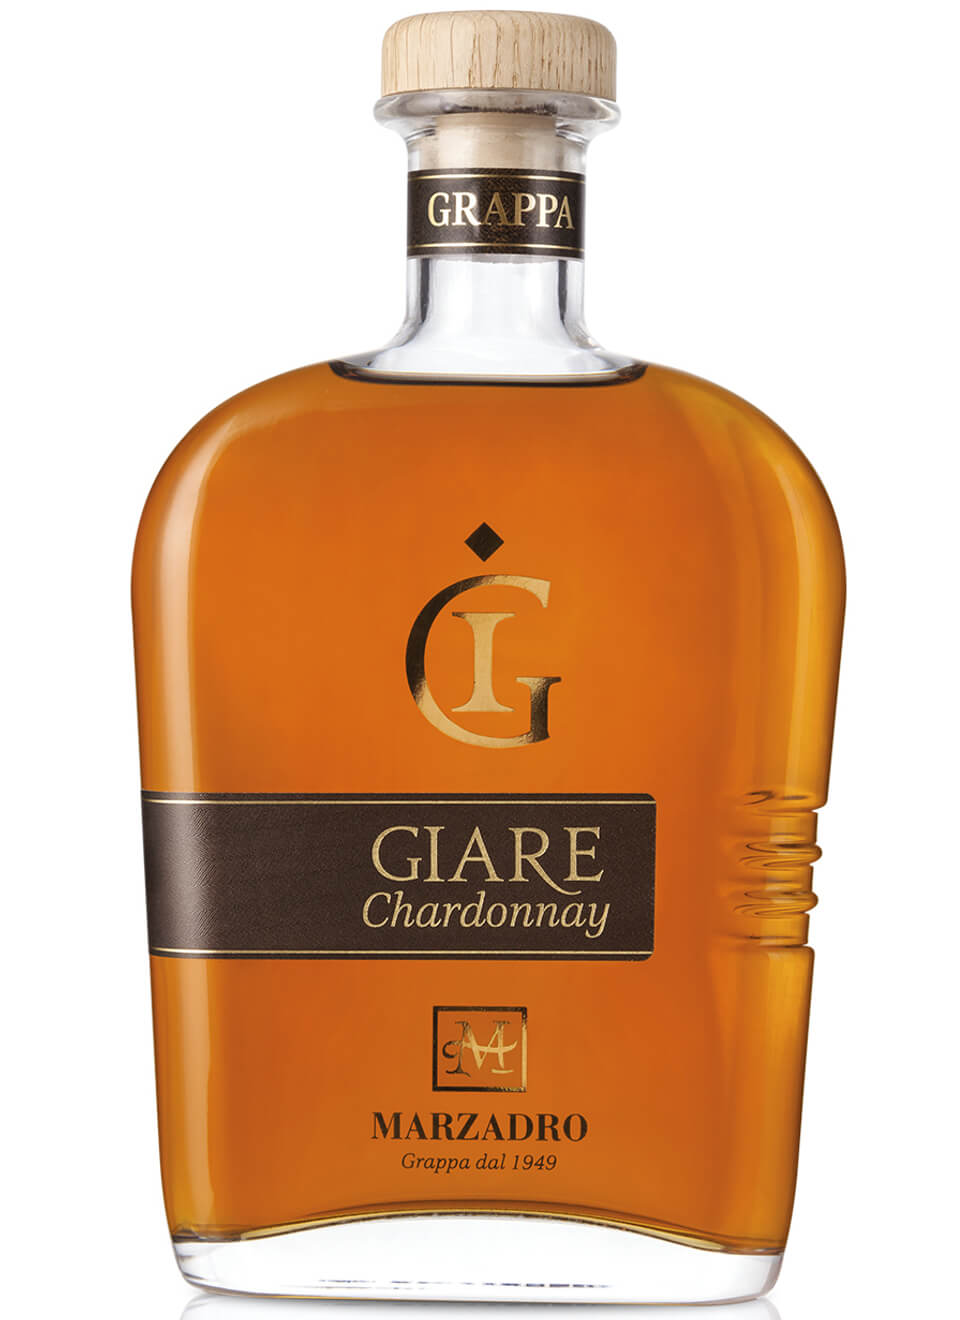 Marzadro Le Giare Chardonnay Grappa 0,7 L